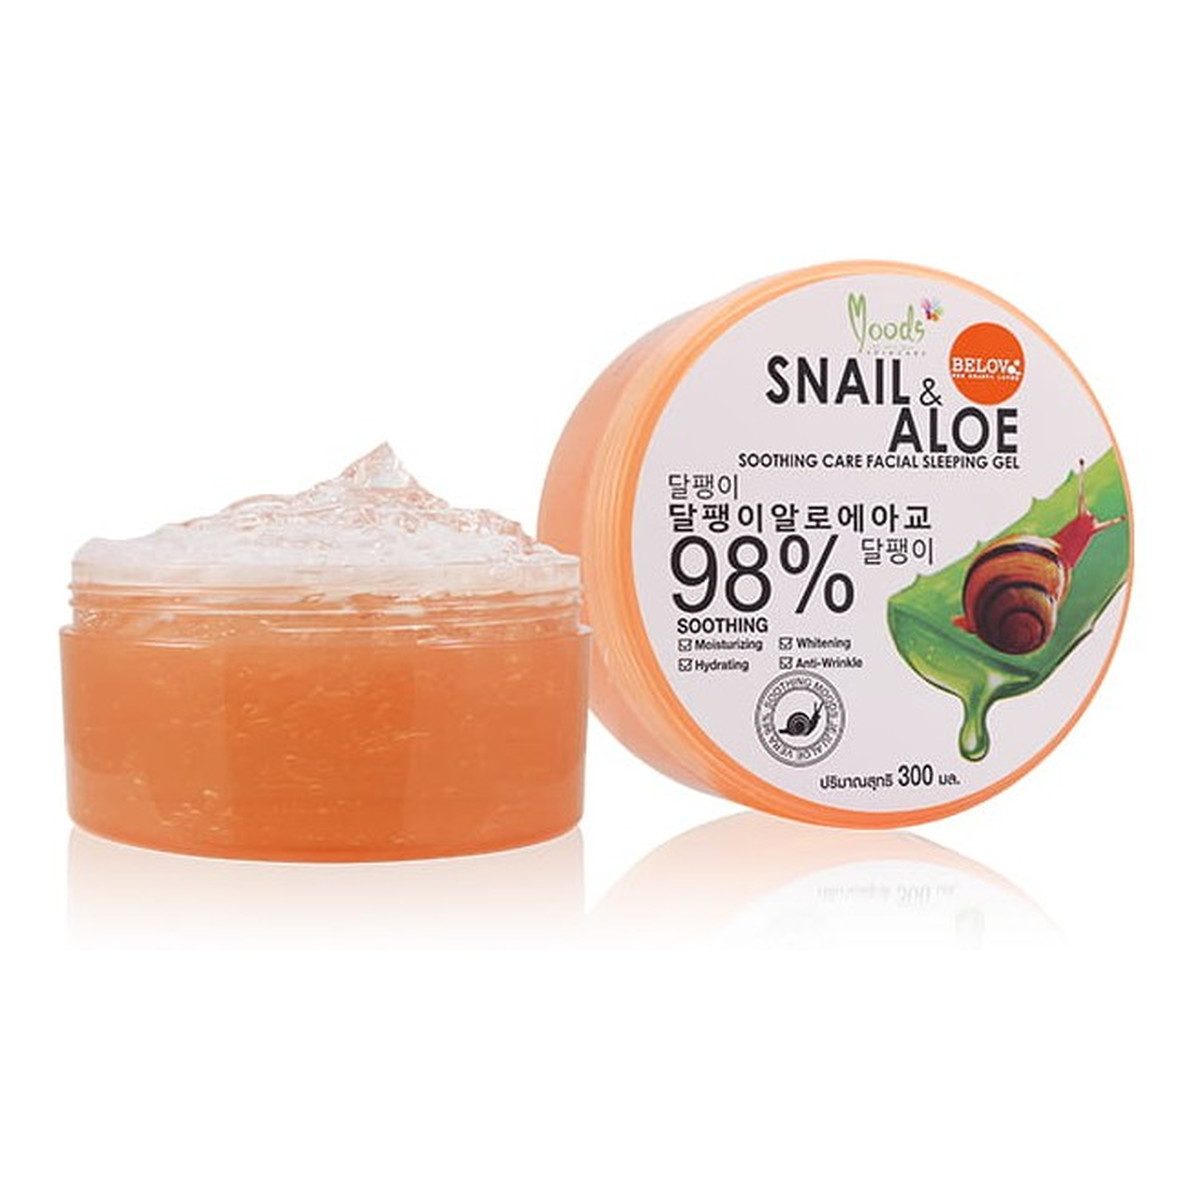 Moods Snail & Aloe 98% nawilżający Żel do twarzy i ciała na noc 300g